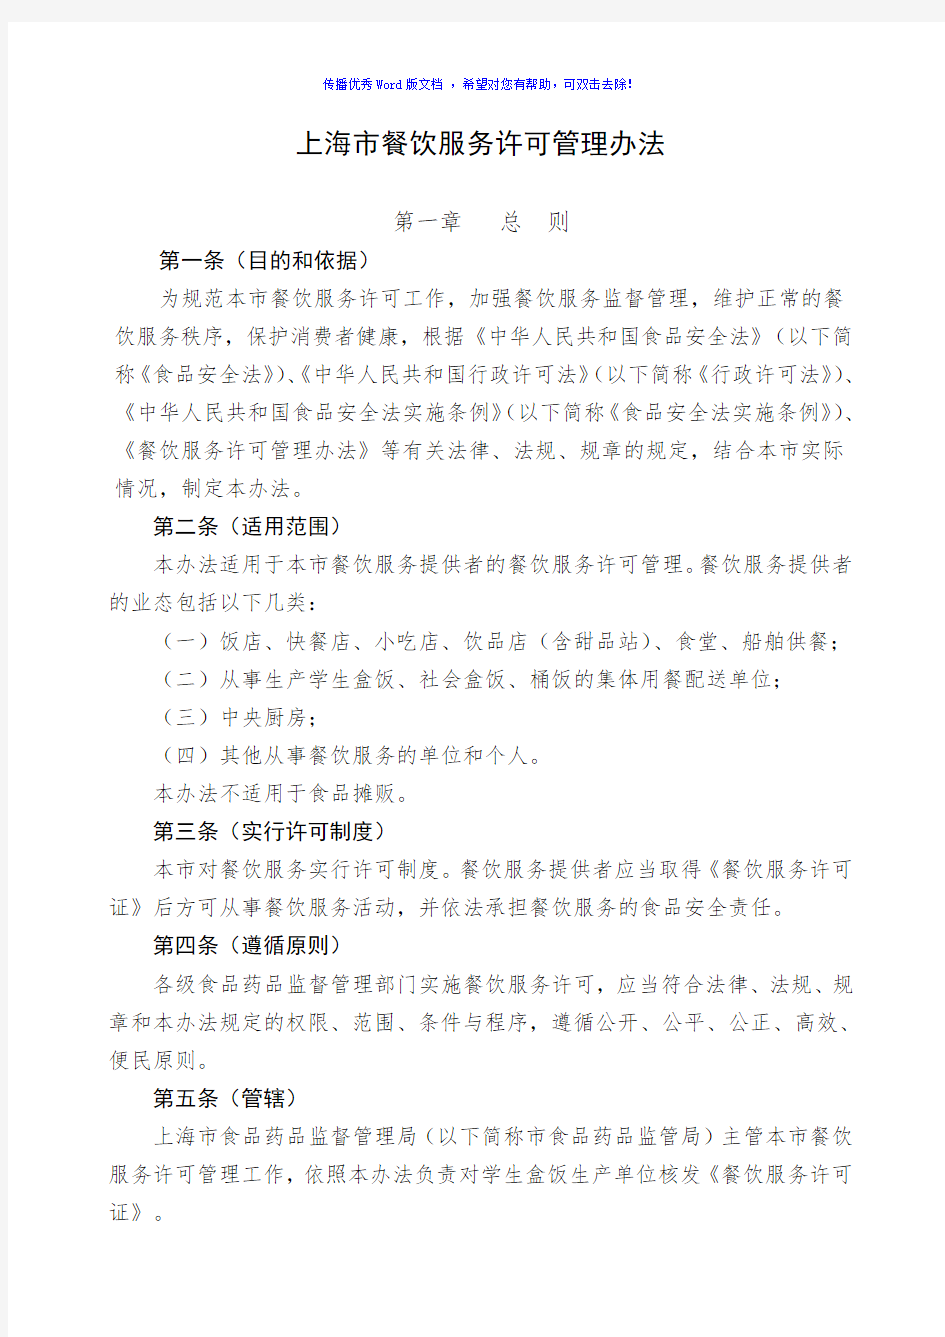 上海市餐饮服务许可管理办理及核查事项Word版